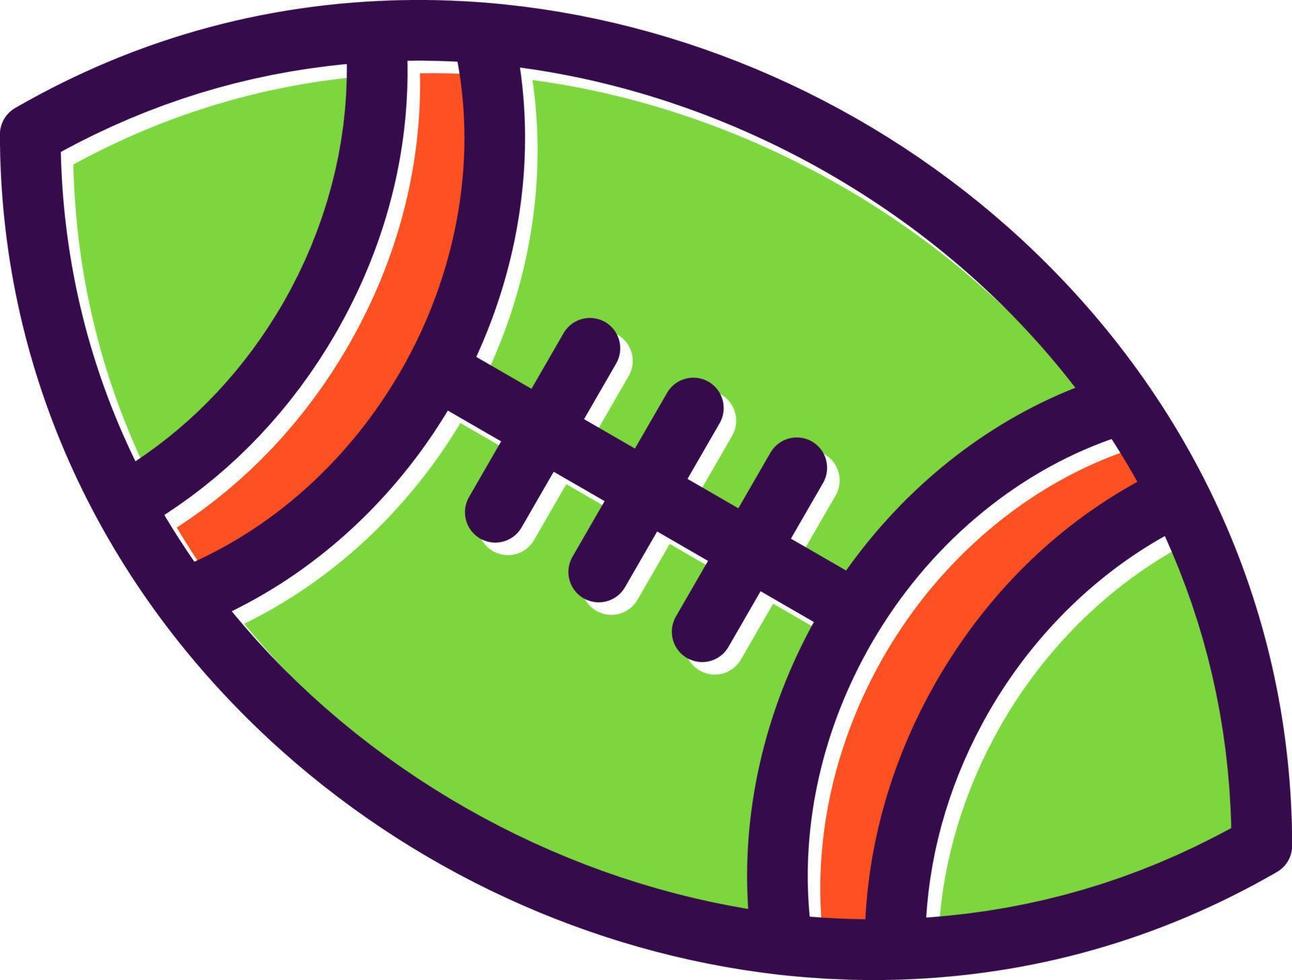 design de ícone de vetor de futebol americano